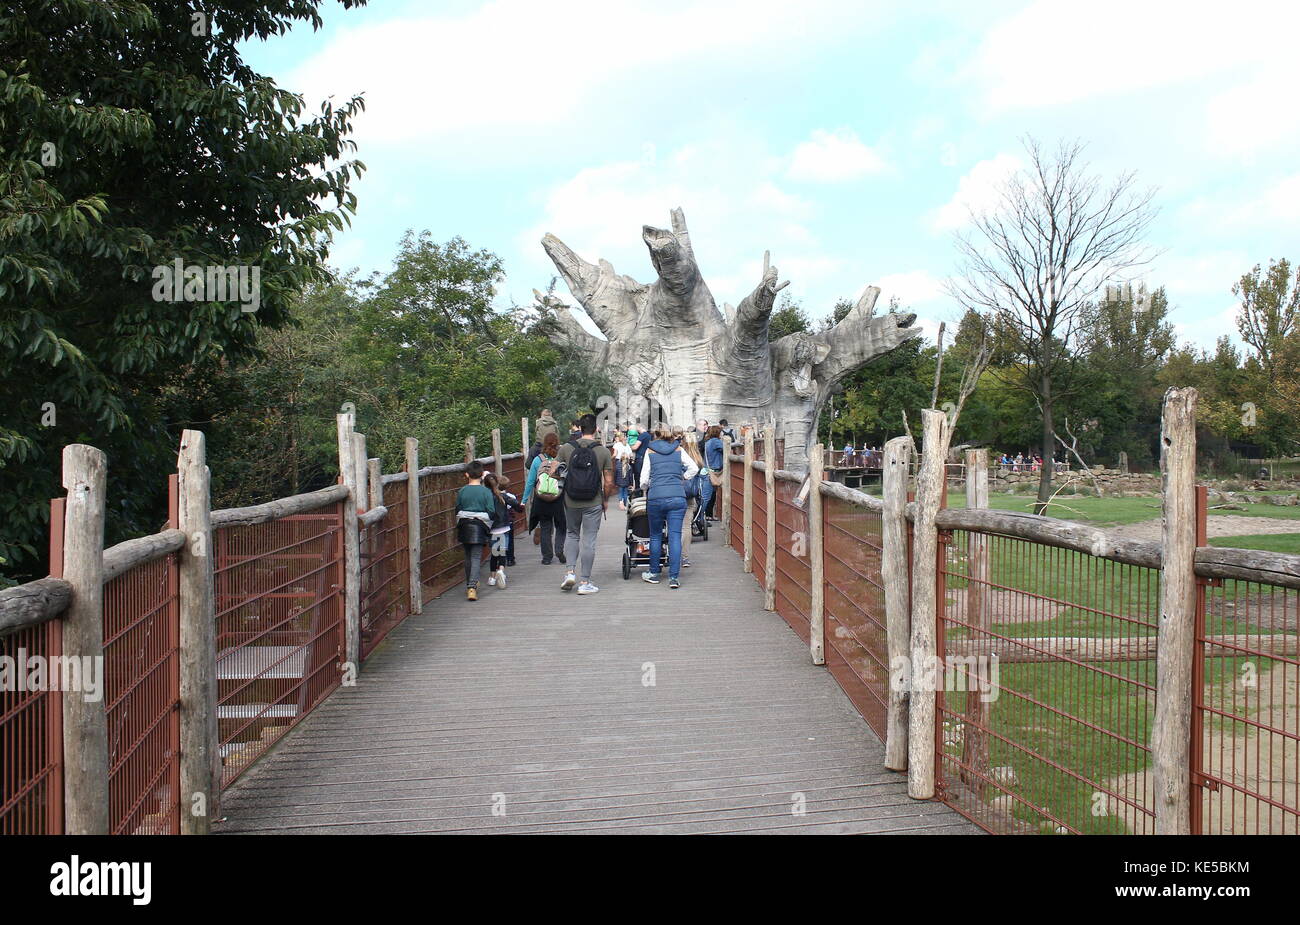 Les personnes qui visitent le zoo de Blijdorp de Rotterdam, Pays-Bas, pont en bois le long de la zone de savane avec des Baobab. Banque D'Images